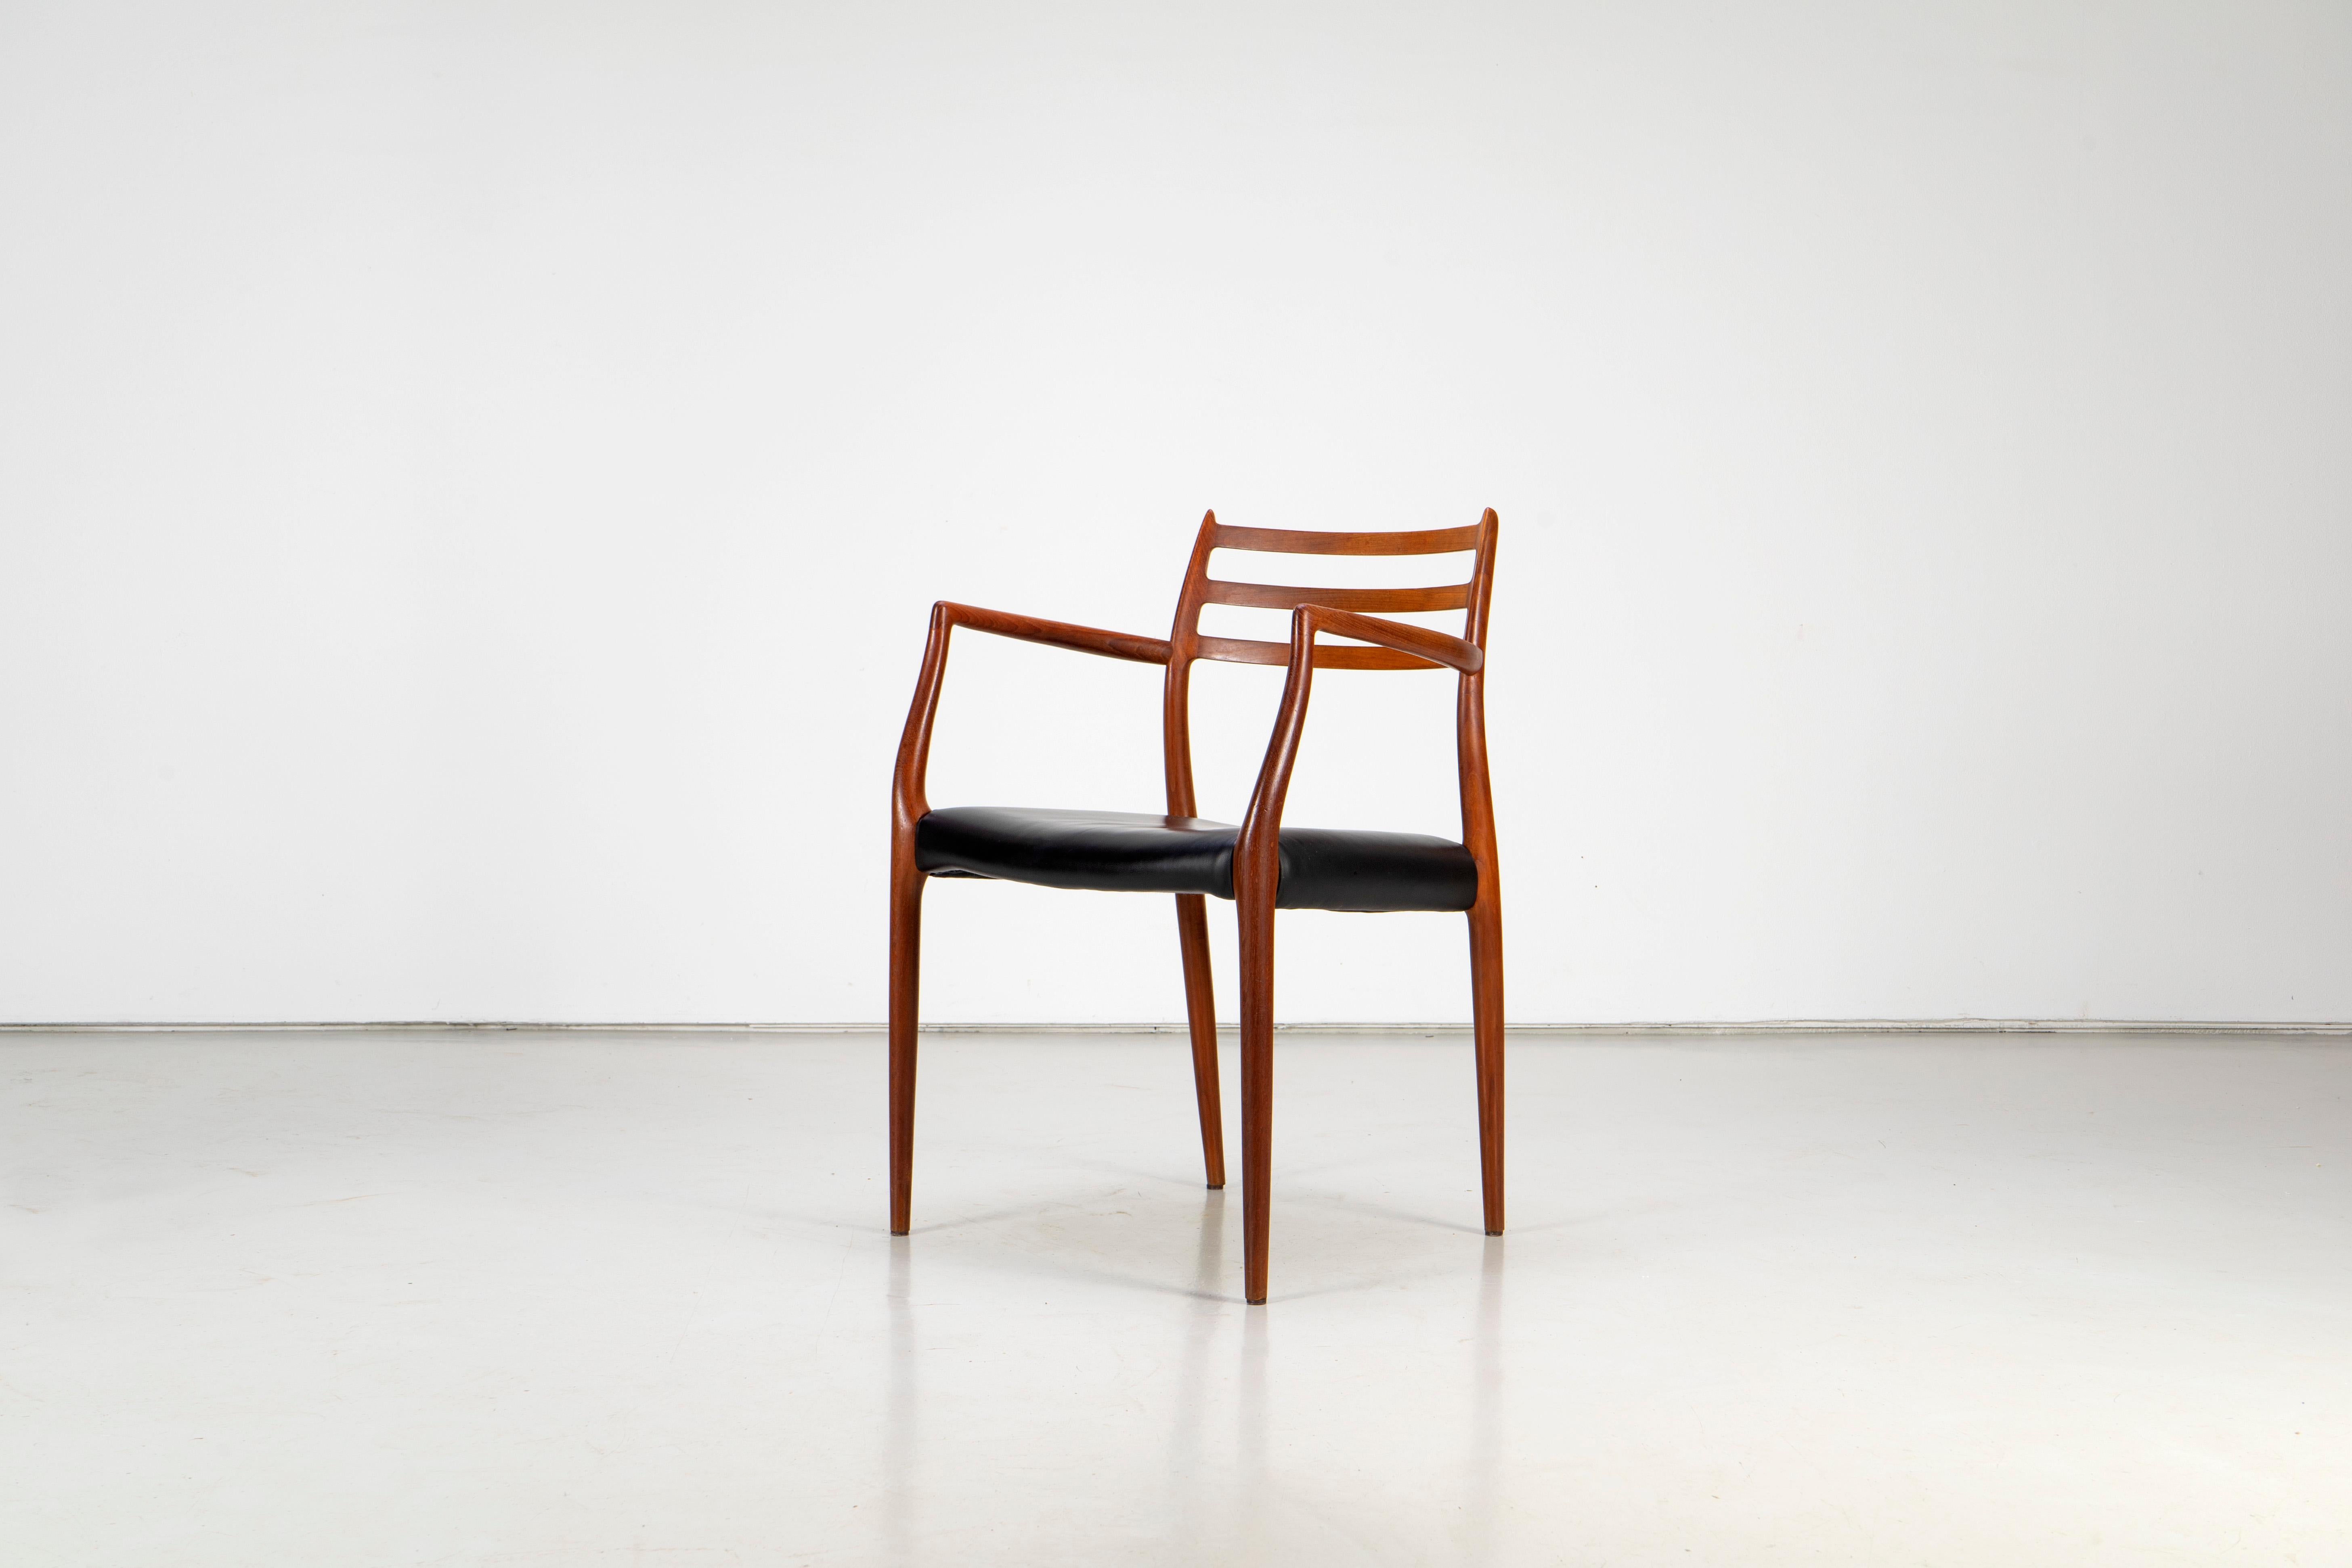 Chaise Modèle 62 des années 1960 conçue par Niels Otto Møller pour J.L. Møllers Møbelfabrik. La chaise est fabriquée en teck avec un revêtement en cuir noir. Très bon état d'usage avec des signes d'usure correspondant à l'âge.